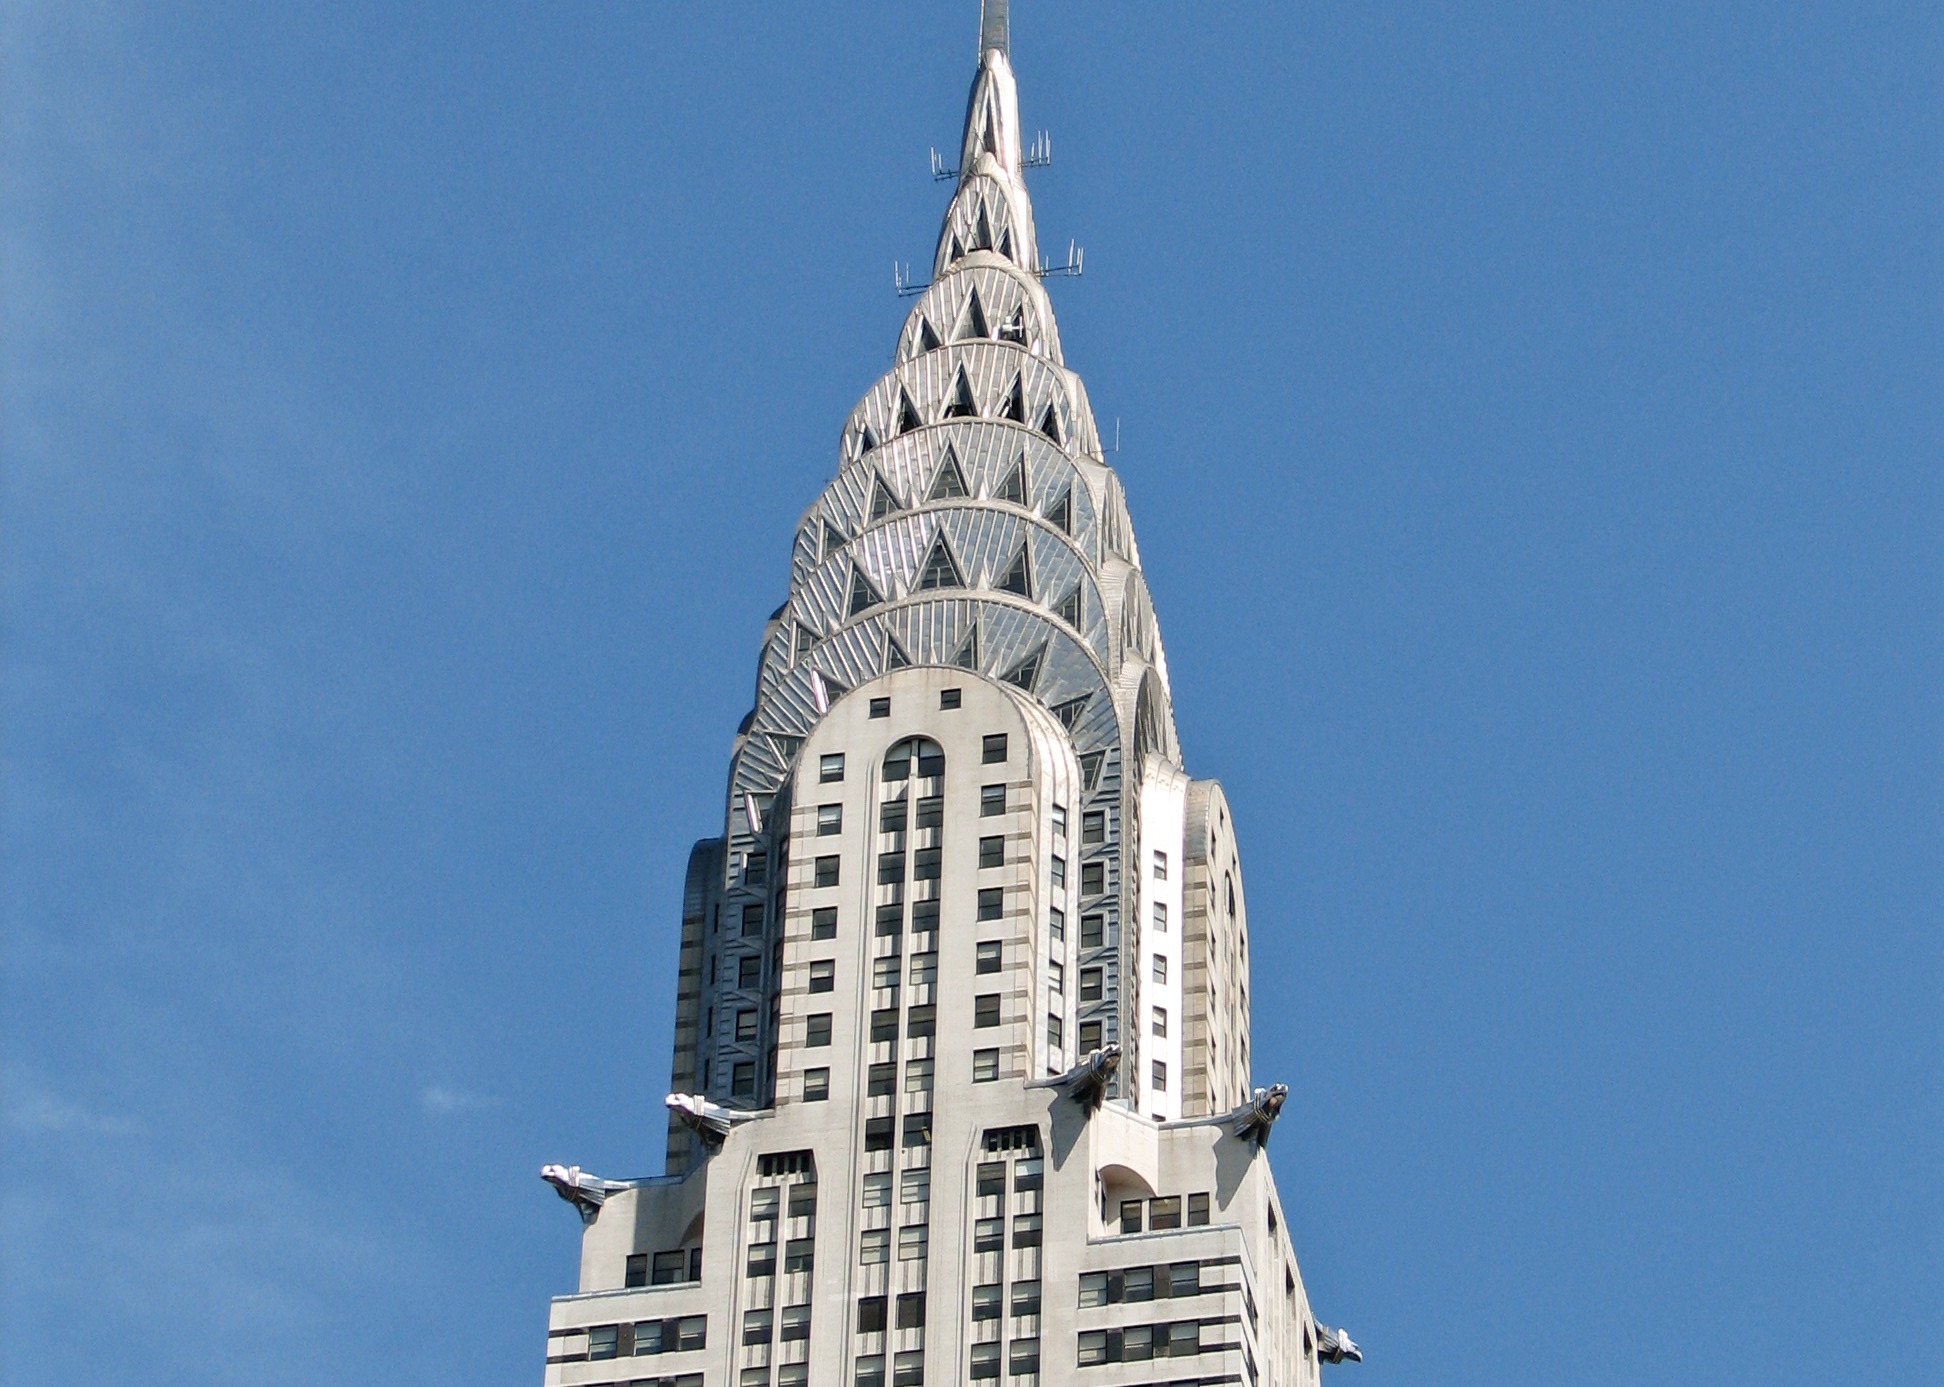 New_York_City_Chrysler_Building_01.jpg